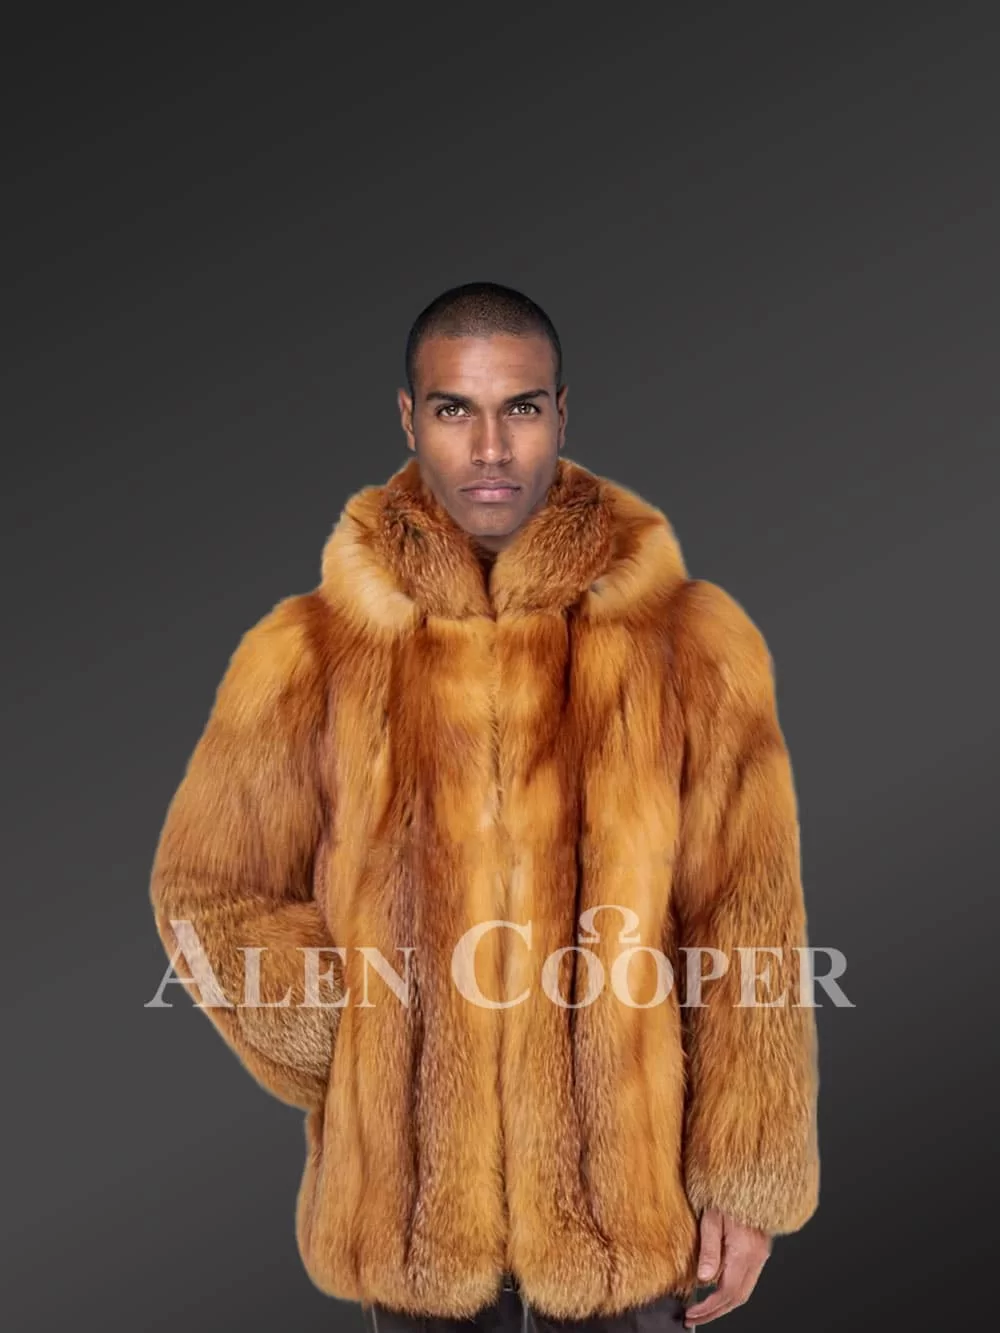 Mid Length Black Fox Fur Coat for Men